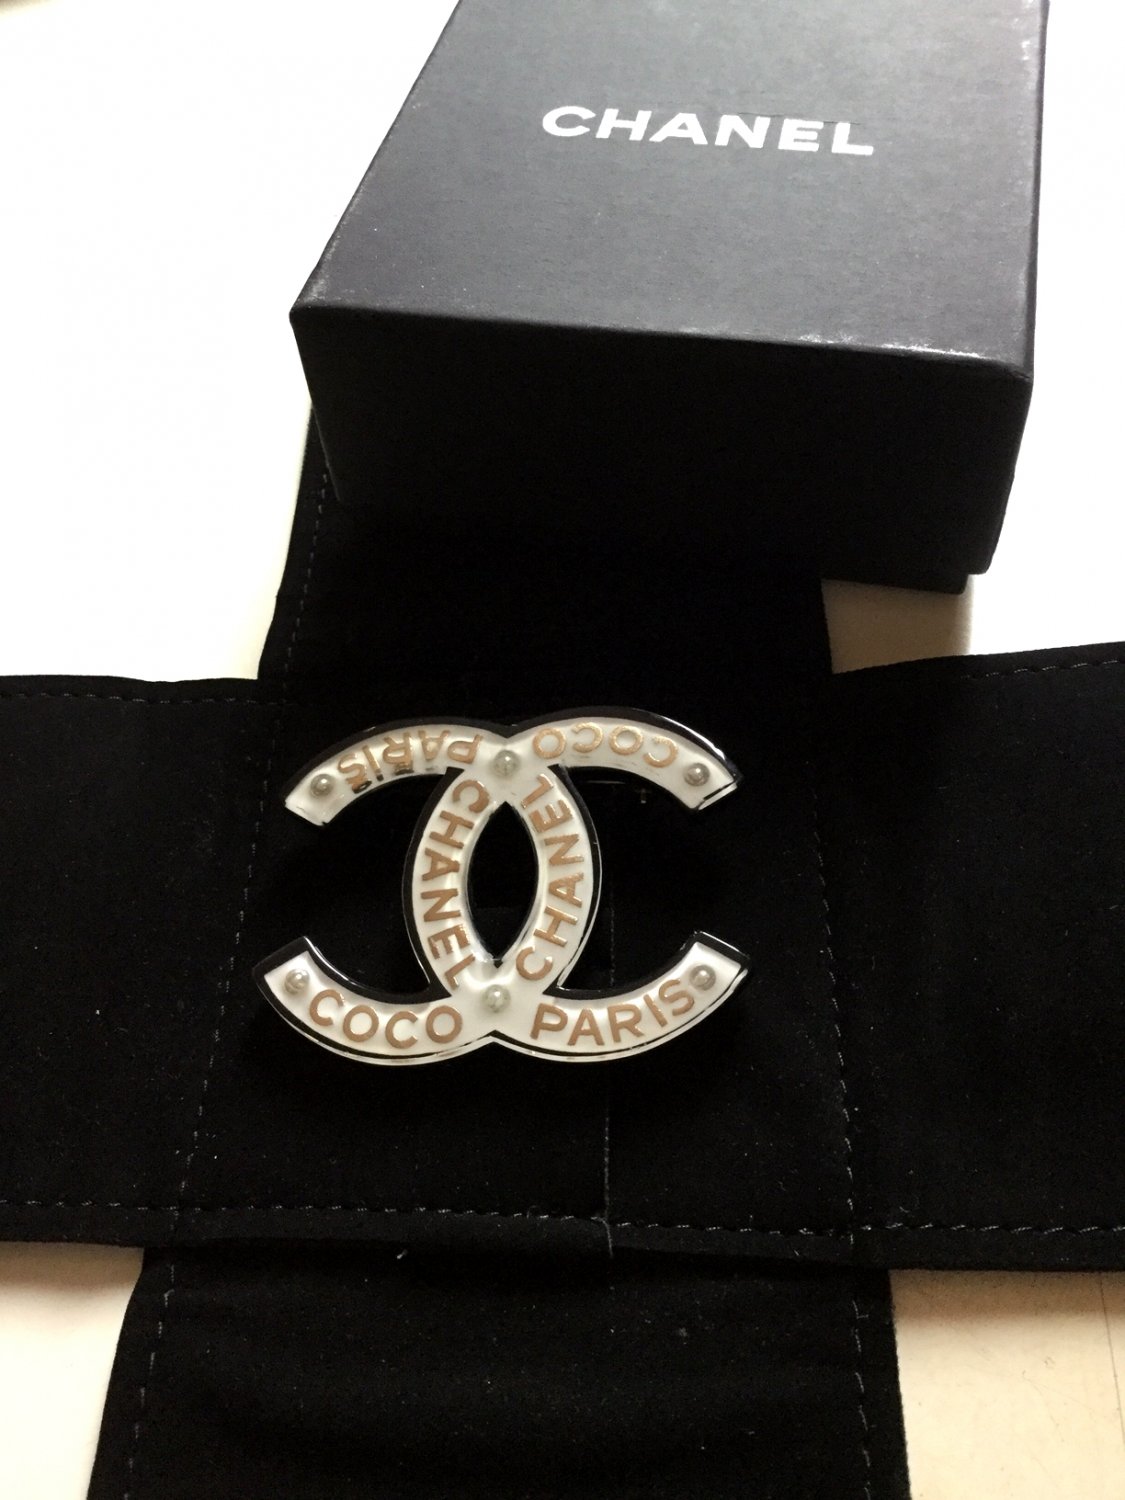 CHANEL COCO CHANEL PARIS CC Fashion Brooch Pin ACRYLIC WHITE Black Gold NIB